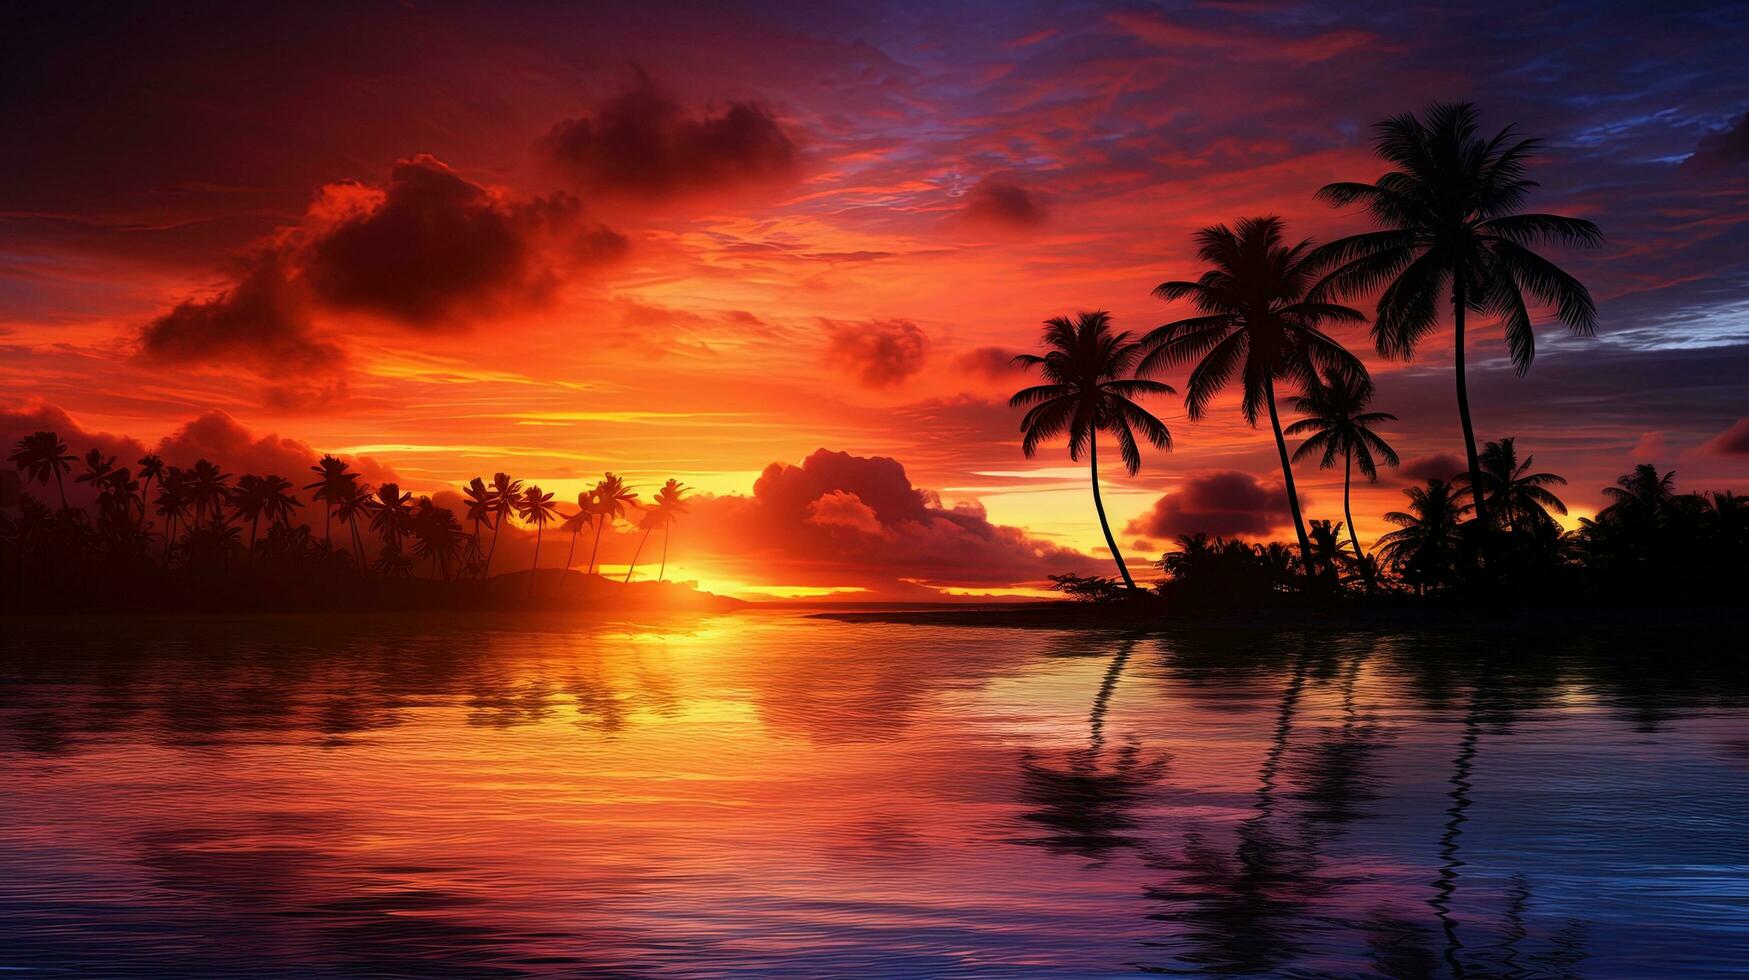 maravilloso palmas silueta en contra Oceano a puesta de sol foto